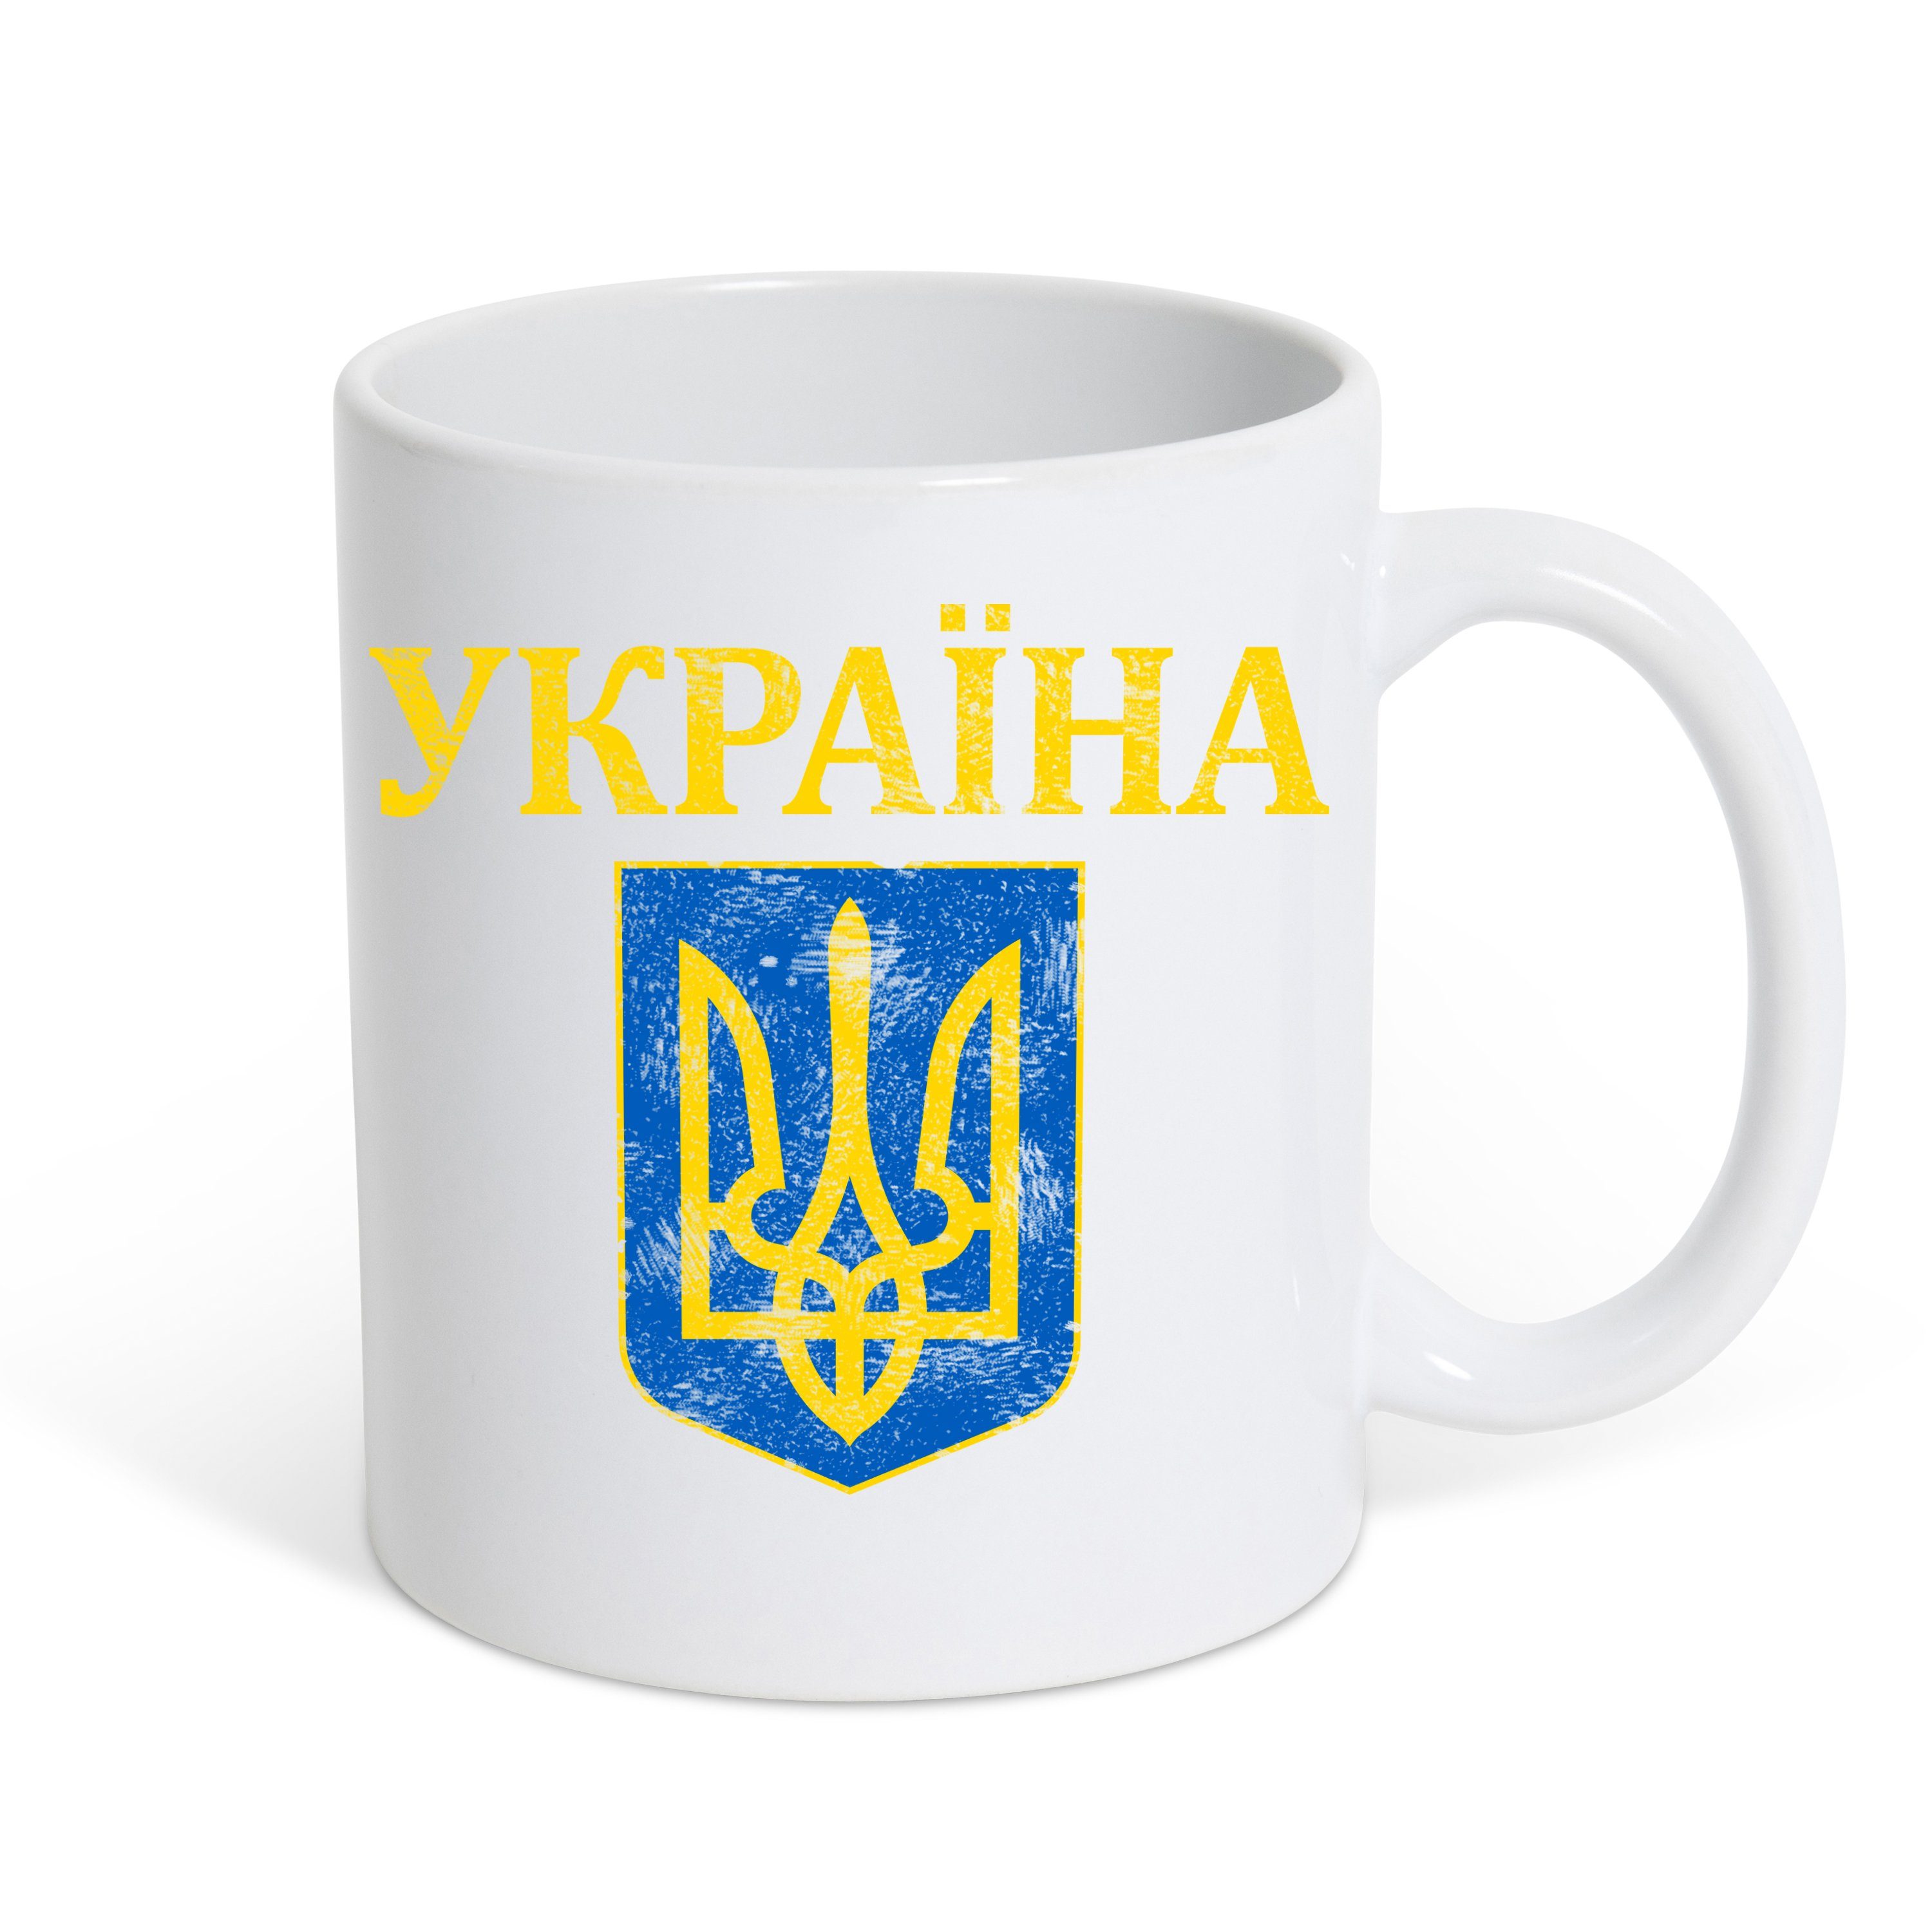 Vintage Kaffeetasse Wappen Tasse Designz Wappen Weiss Youth Ukraine Print Vintage Keramik, Geschenk, mit